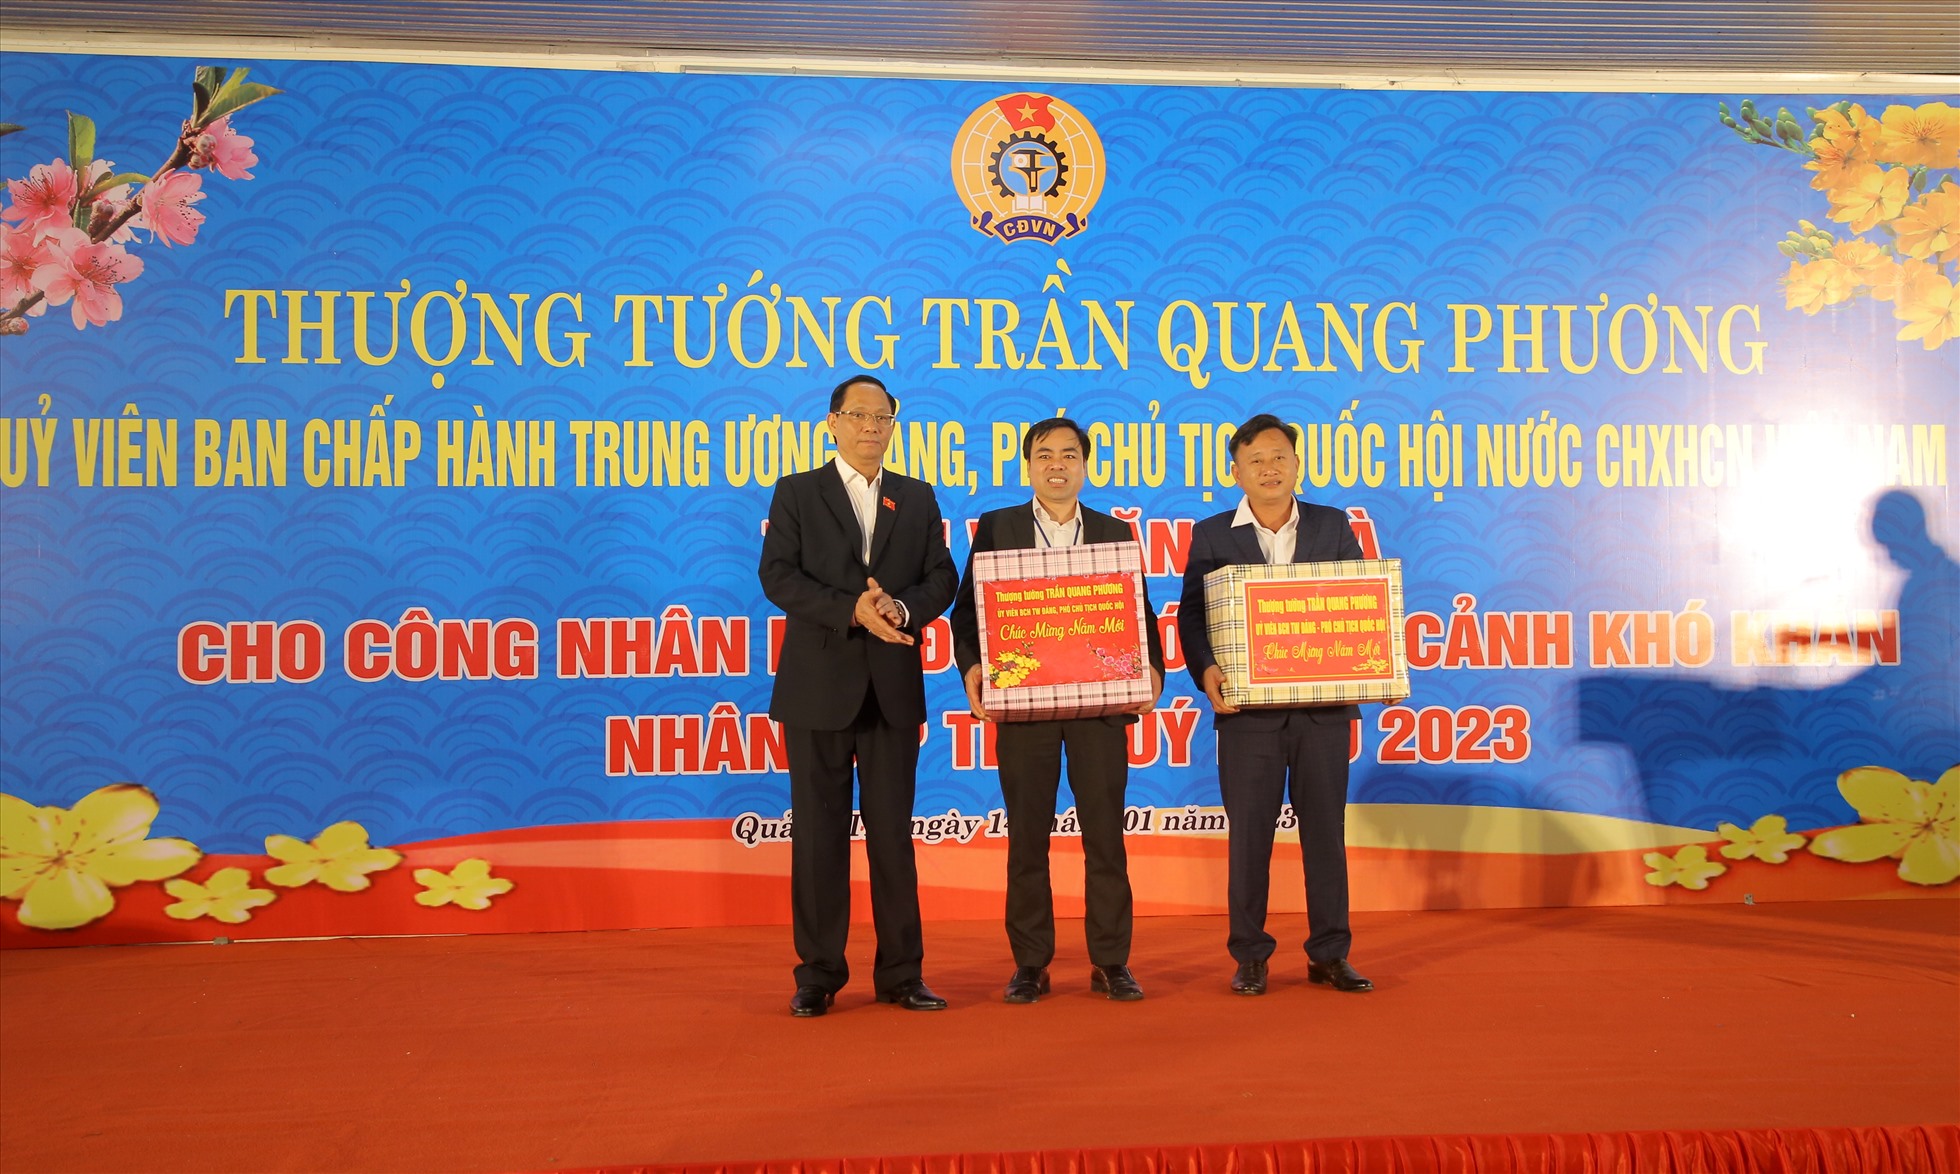 Thượng tướng Trần Quang Phương, Ủy viên Ban chấp hành Trung ương Đảng, Phó Chủ tịch Quốc hội tặng quà cho Công ty và Công đoàn cơ sở Công ty Cổ phần May và Thương mại Gio Linh.